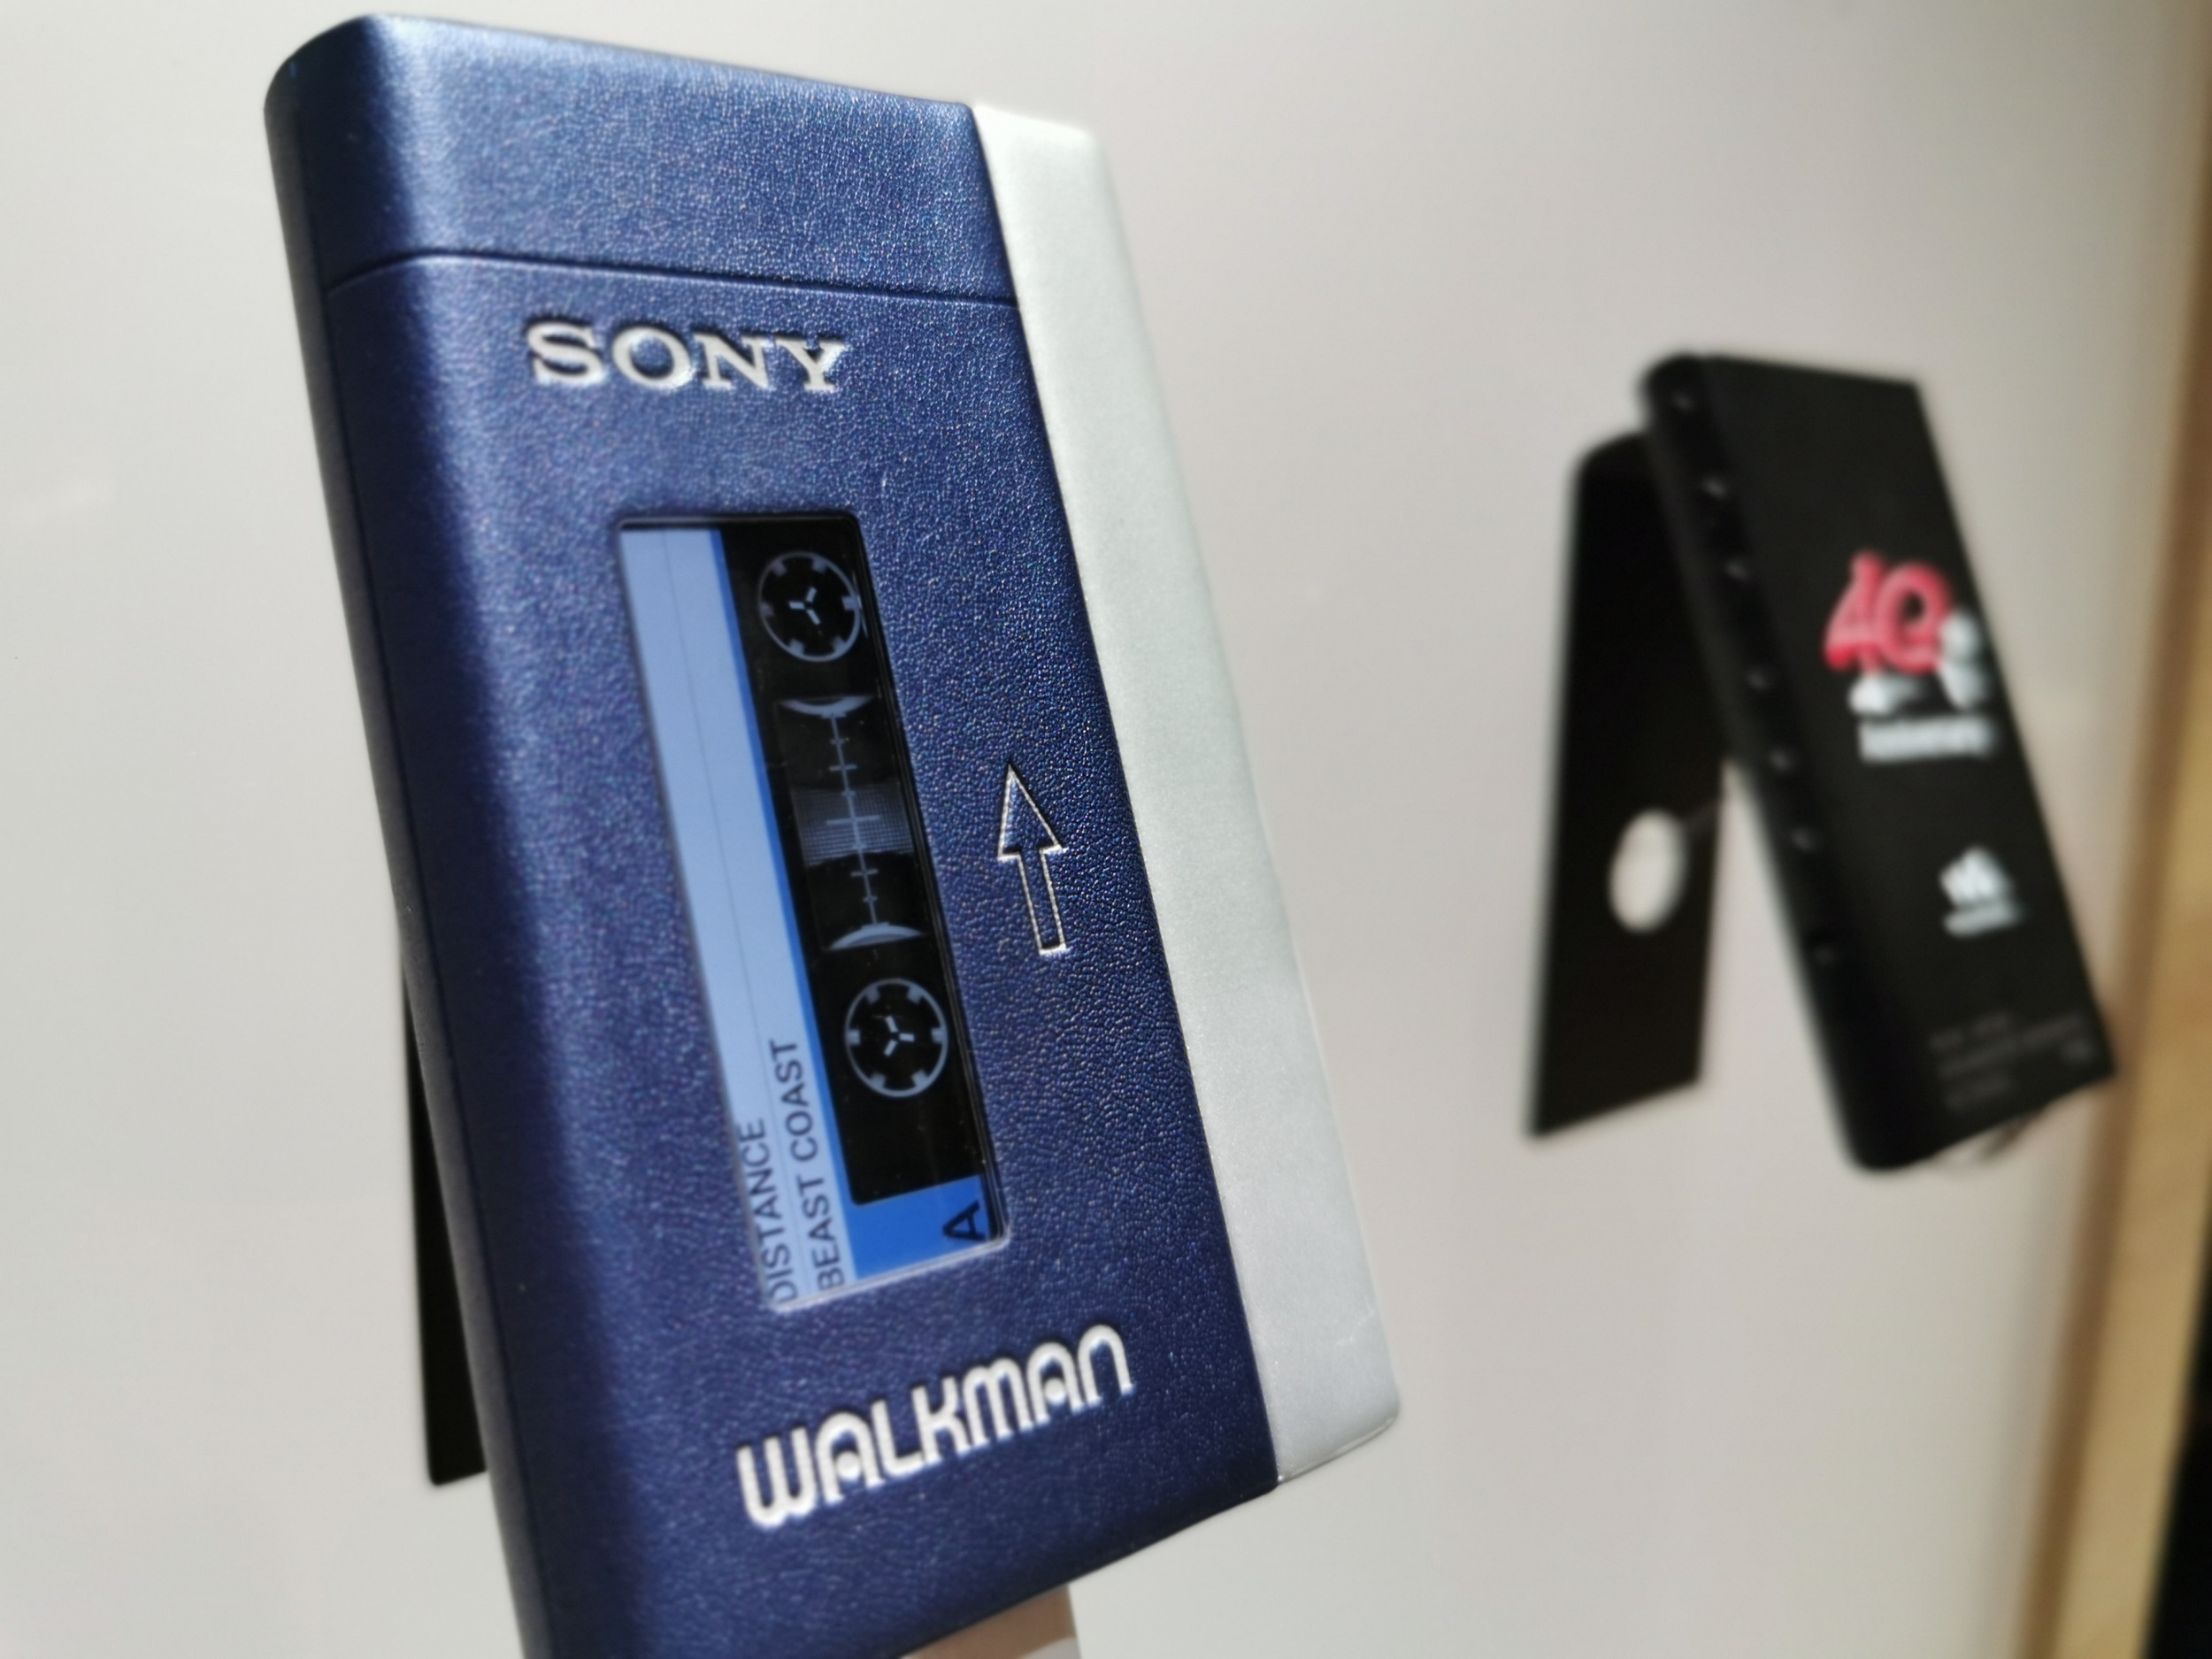 Sony Walkman Heaven